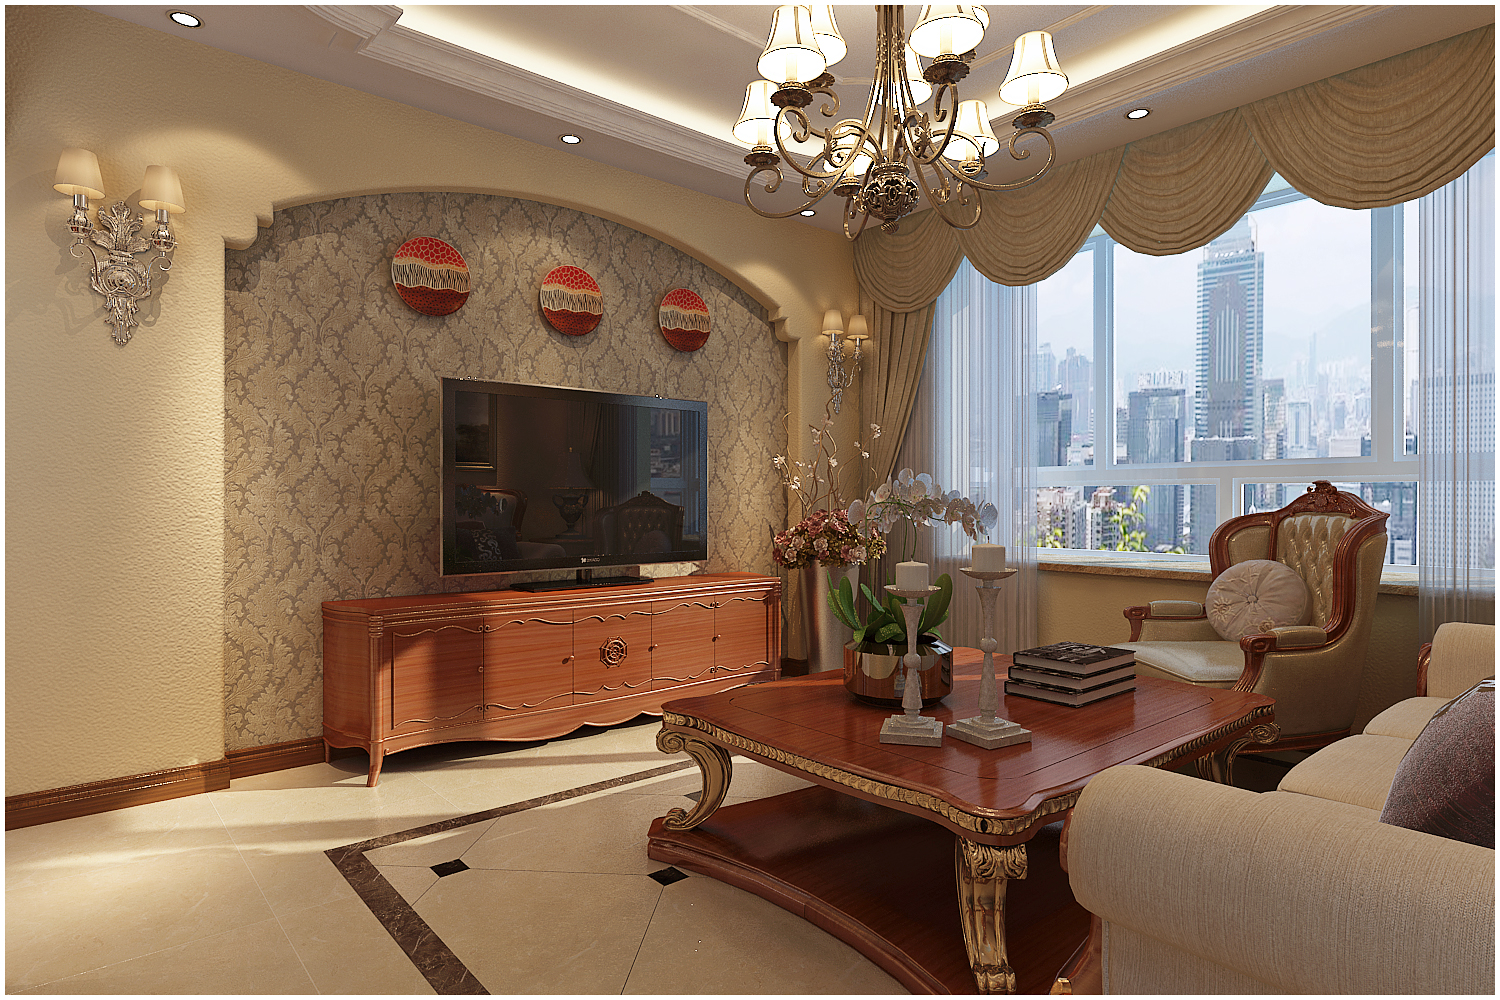 三居 美式 收纳 小资 客厅图片来自快乐彩在尚乐城美式装修风格设计的分享